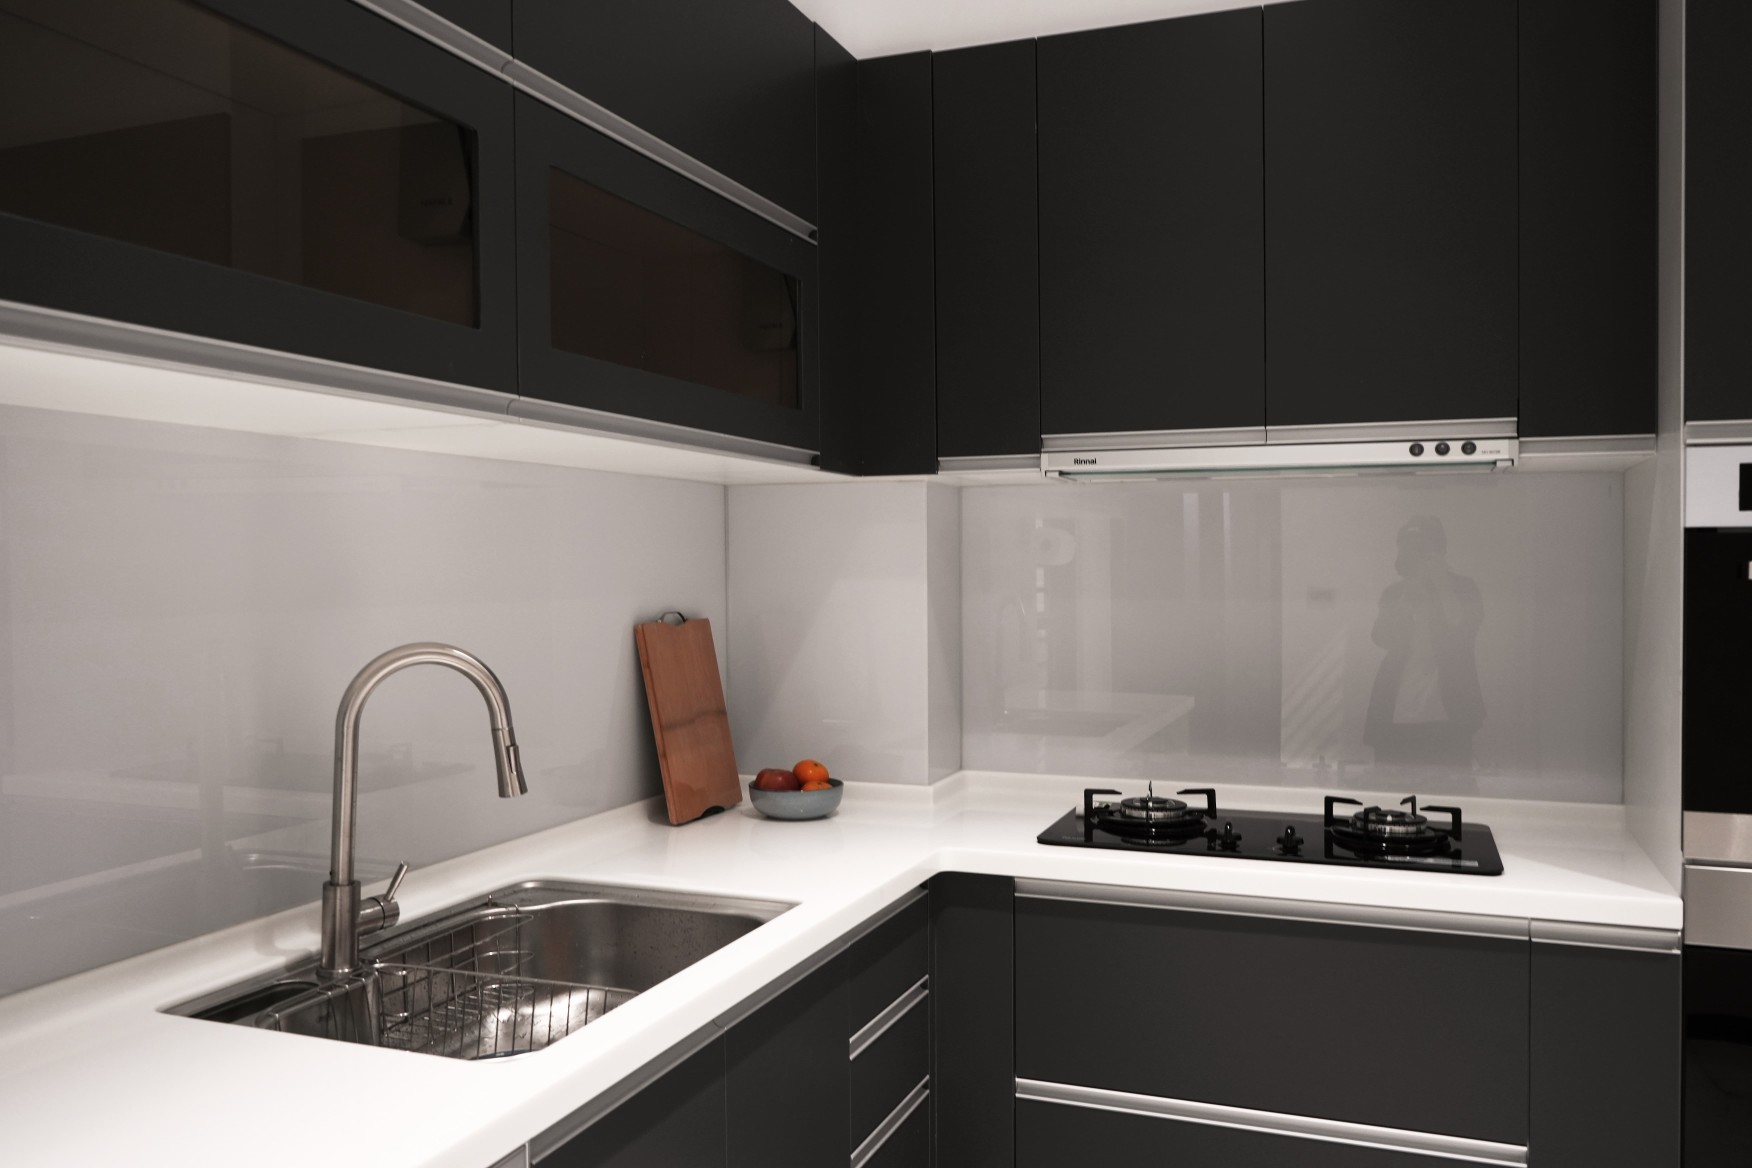 廚房設計以更低調現代流線感作為主體視覺